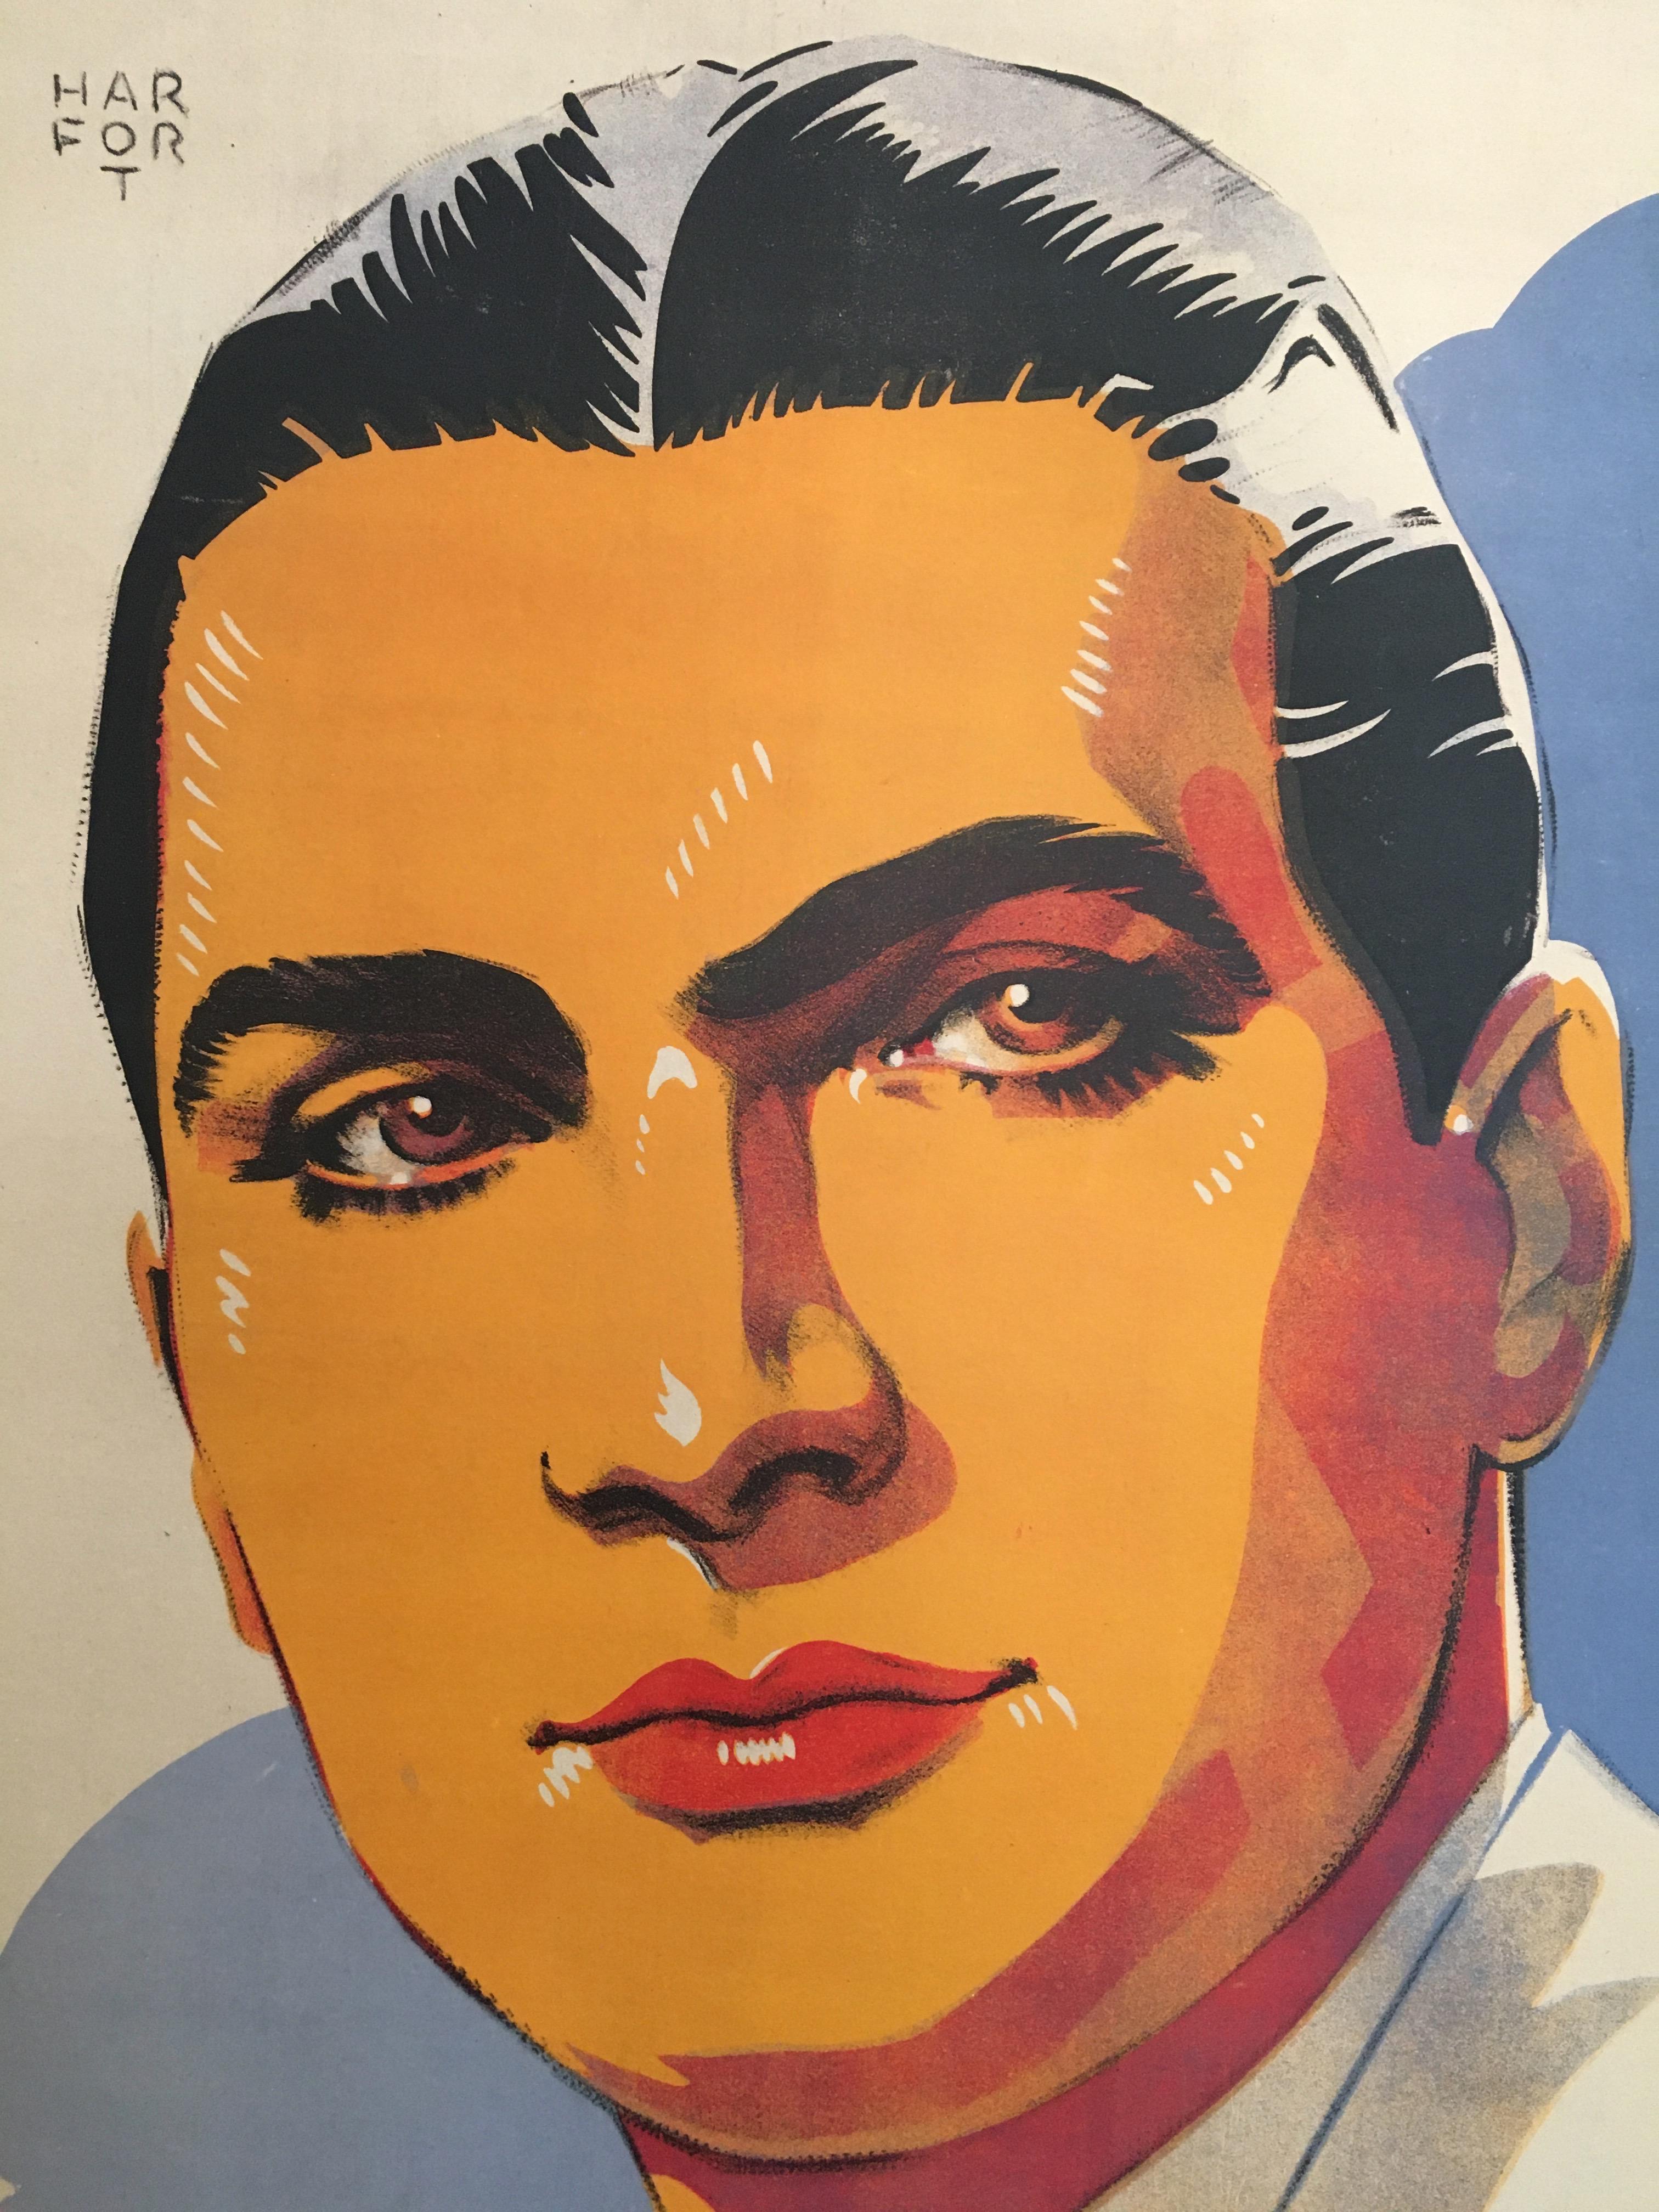 Roger Gerle, original französisches Plakat von Hartford

Ein charmantes Plakat aus den 1940er Jahren: Roger Gerle war ein französischer Unterhaltungskünstler und Musiker 

Künstler
Hartford

Jahr
1940er

Abmessungen
123 x 88 cm.